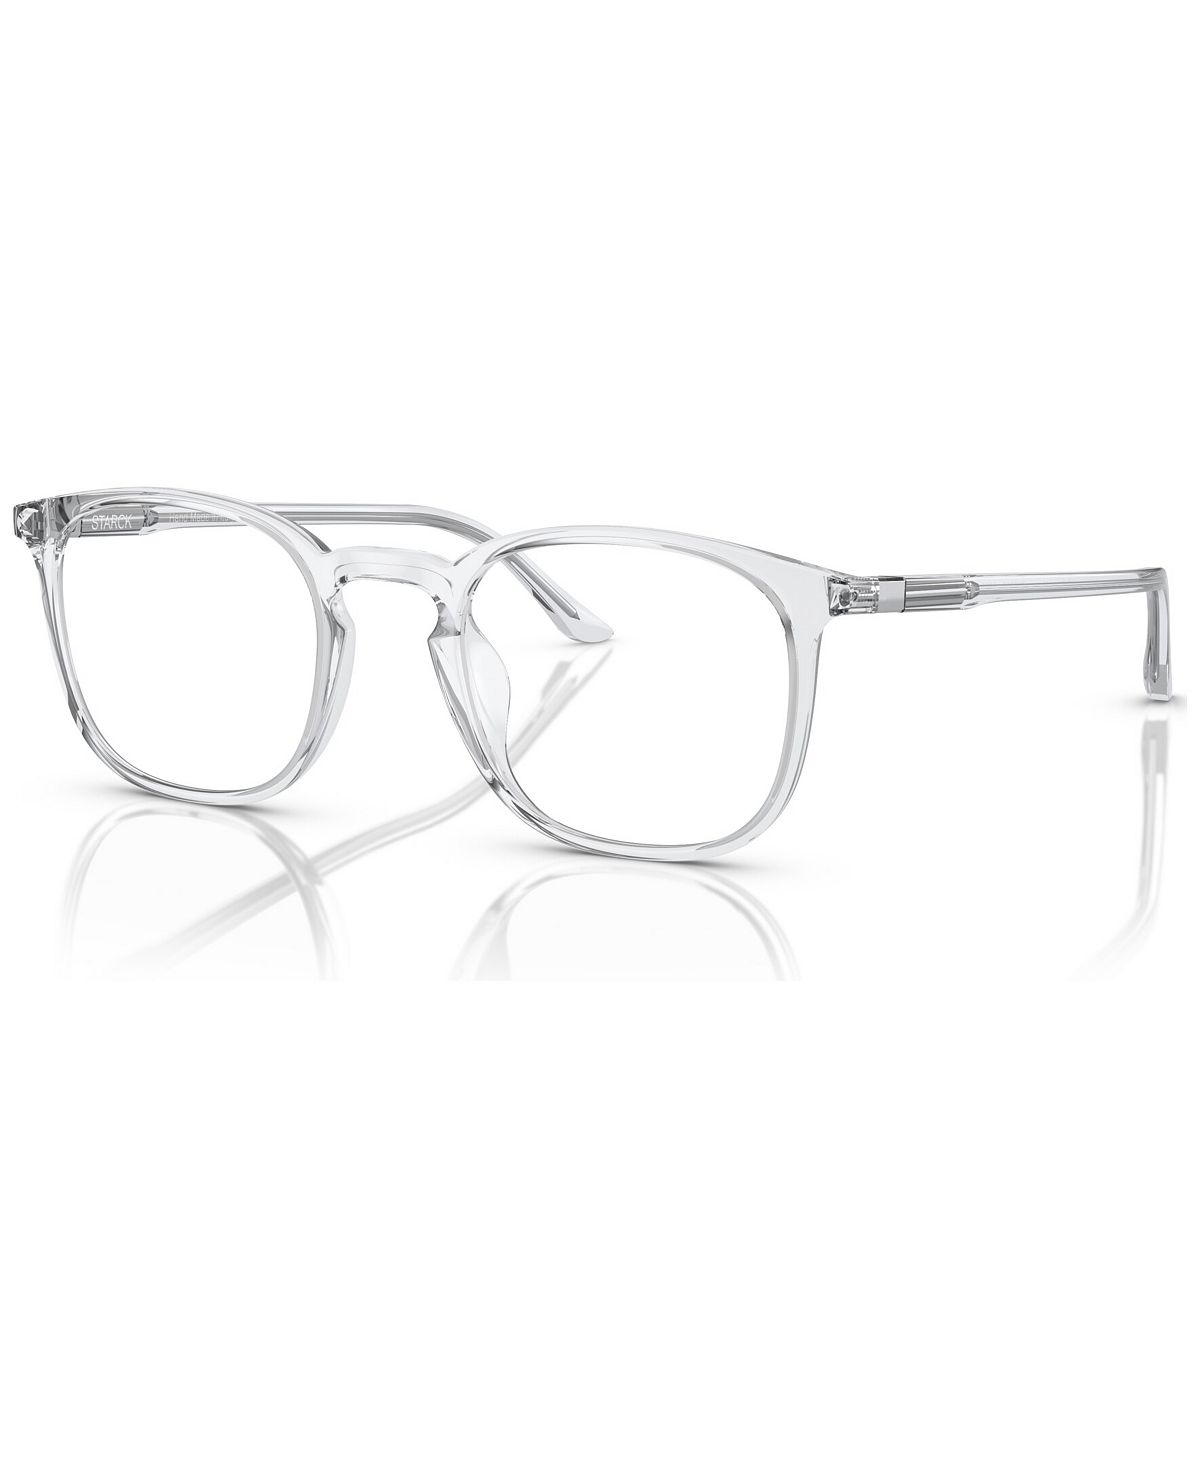 Мужские очки, SH3088 49 Starck Eyes цена и фото